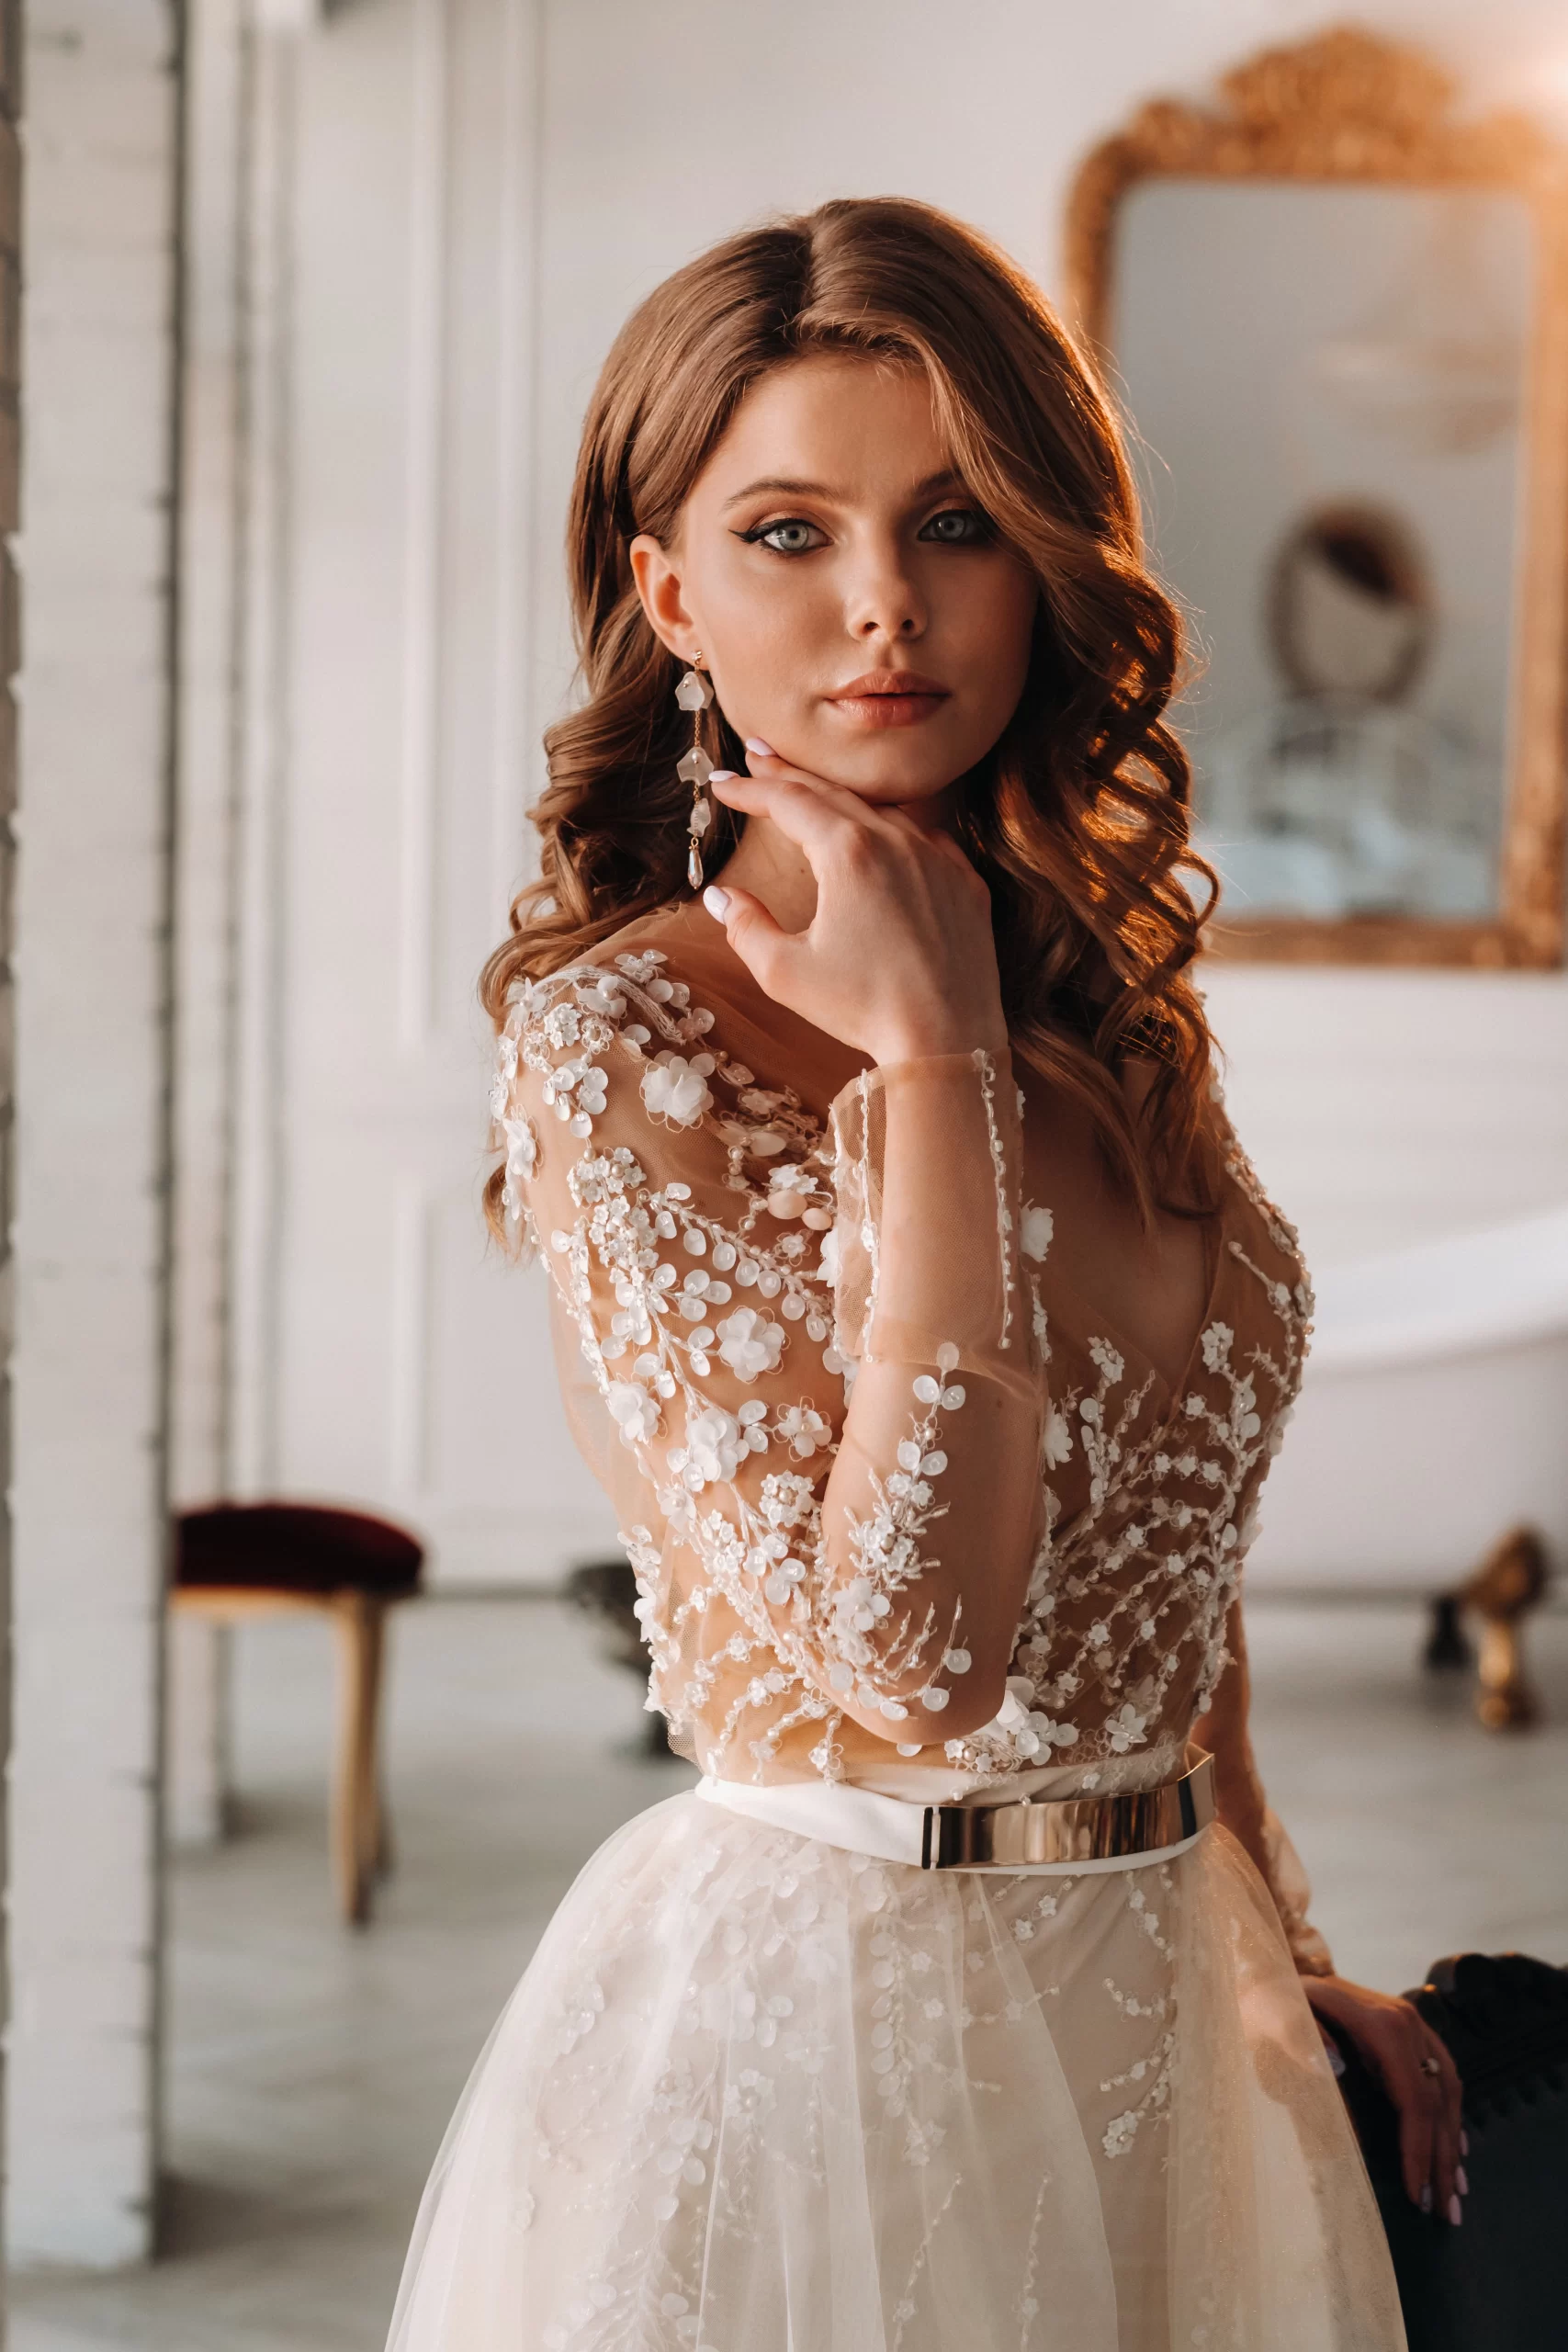 Mulher ruiva usando um vestido de noiva no tom rose com detalhes brancos. Ela está em uma sala e faz uma pose com a mão no rosto enquanto olha para a cãmera.